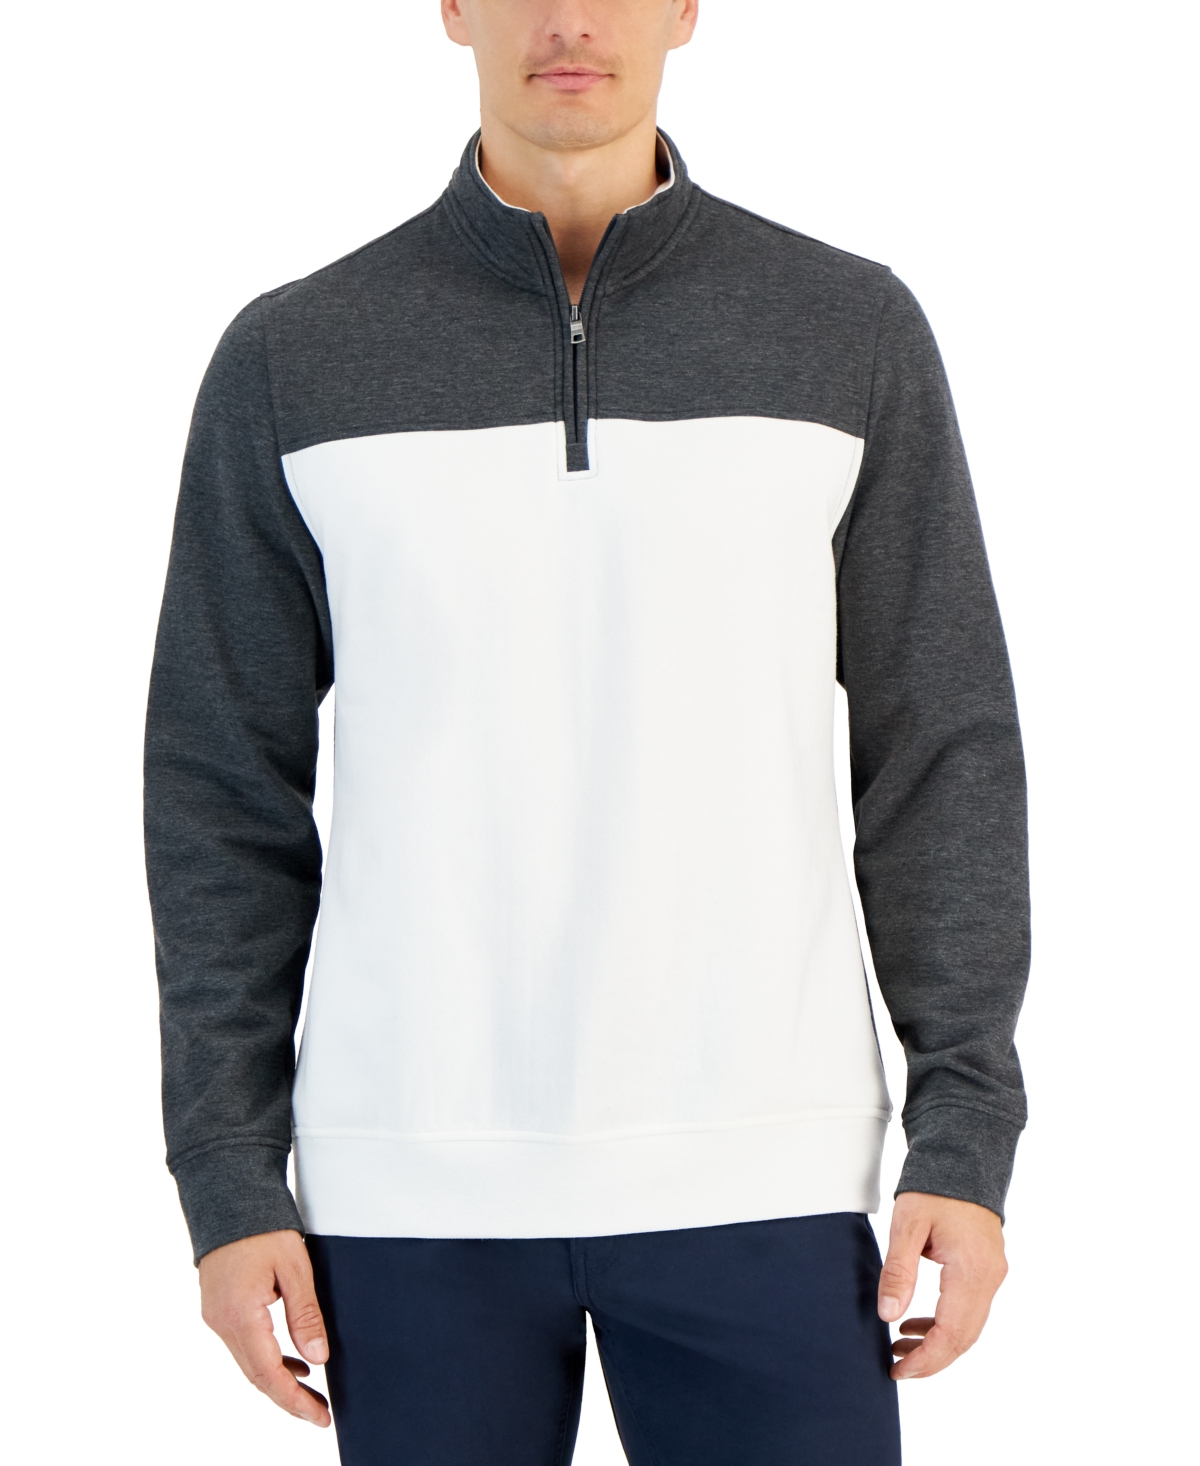 Men's Colorblocked Quarter-Zip Fleece Sweater, Created for Macy's - Dark Lead